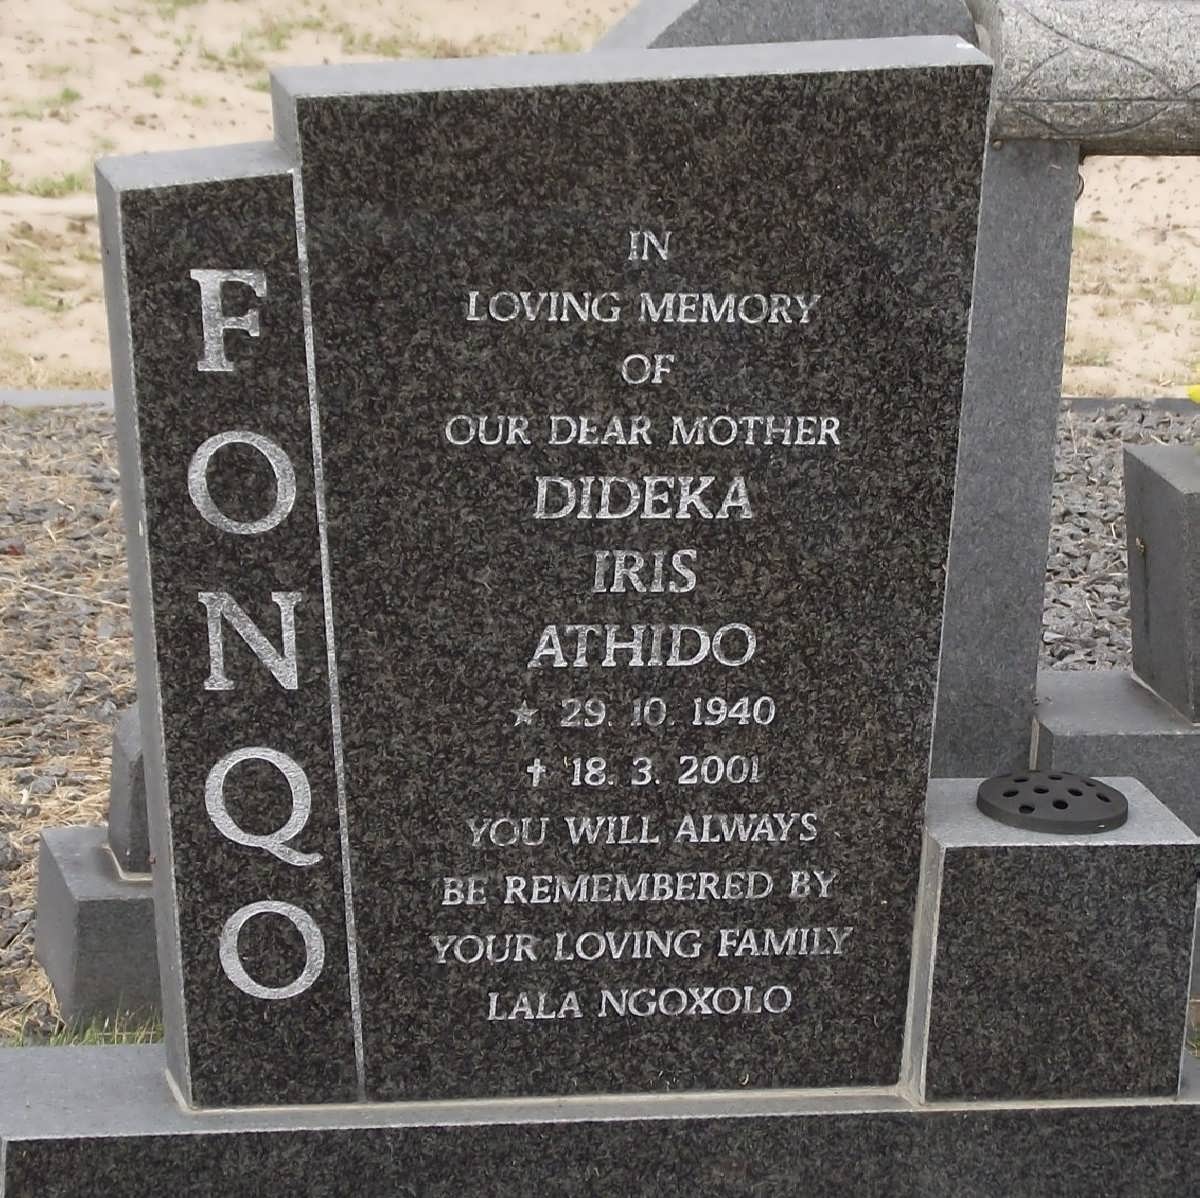 FONQO Dideka Iris Athido 1940-2001